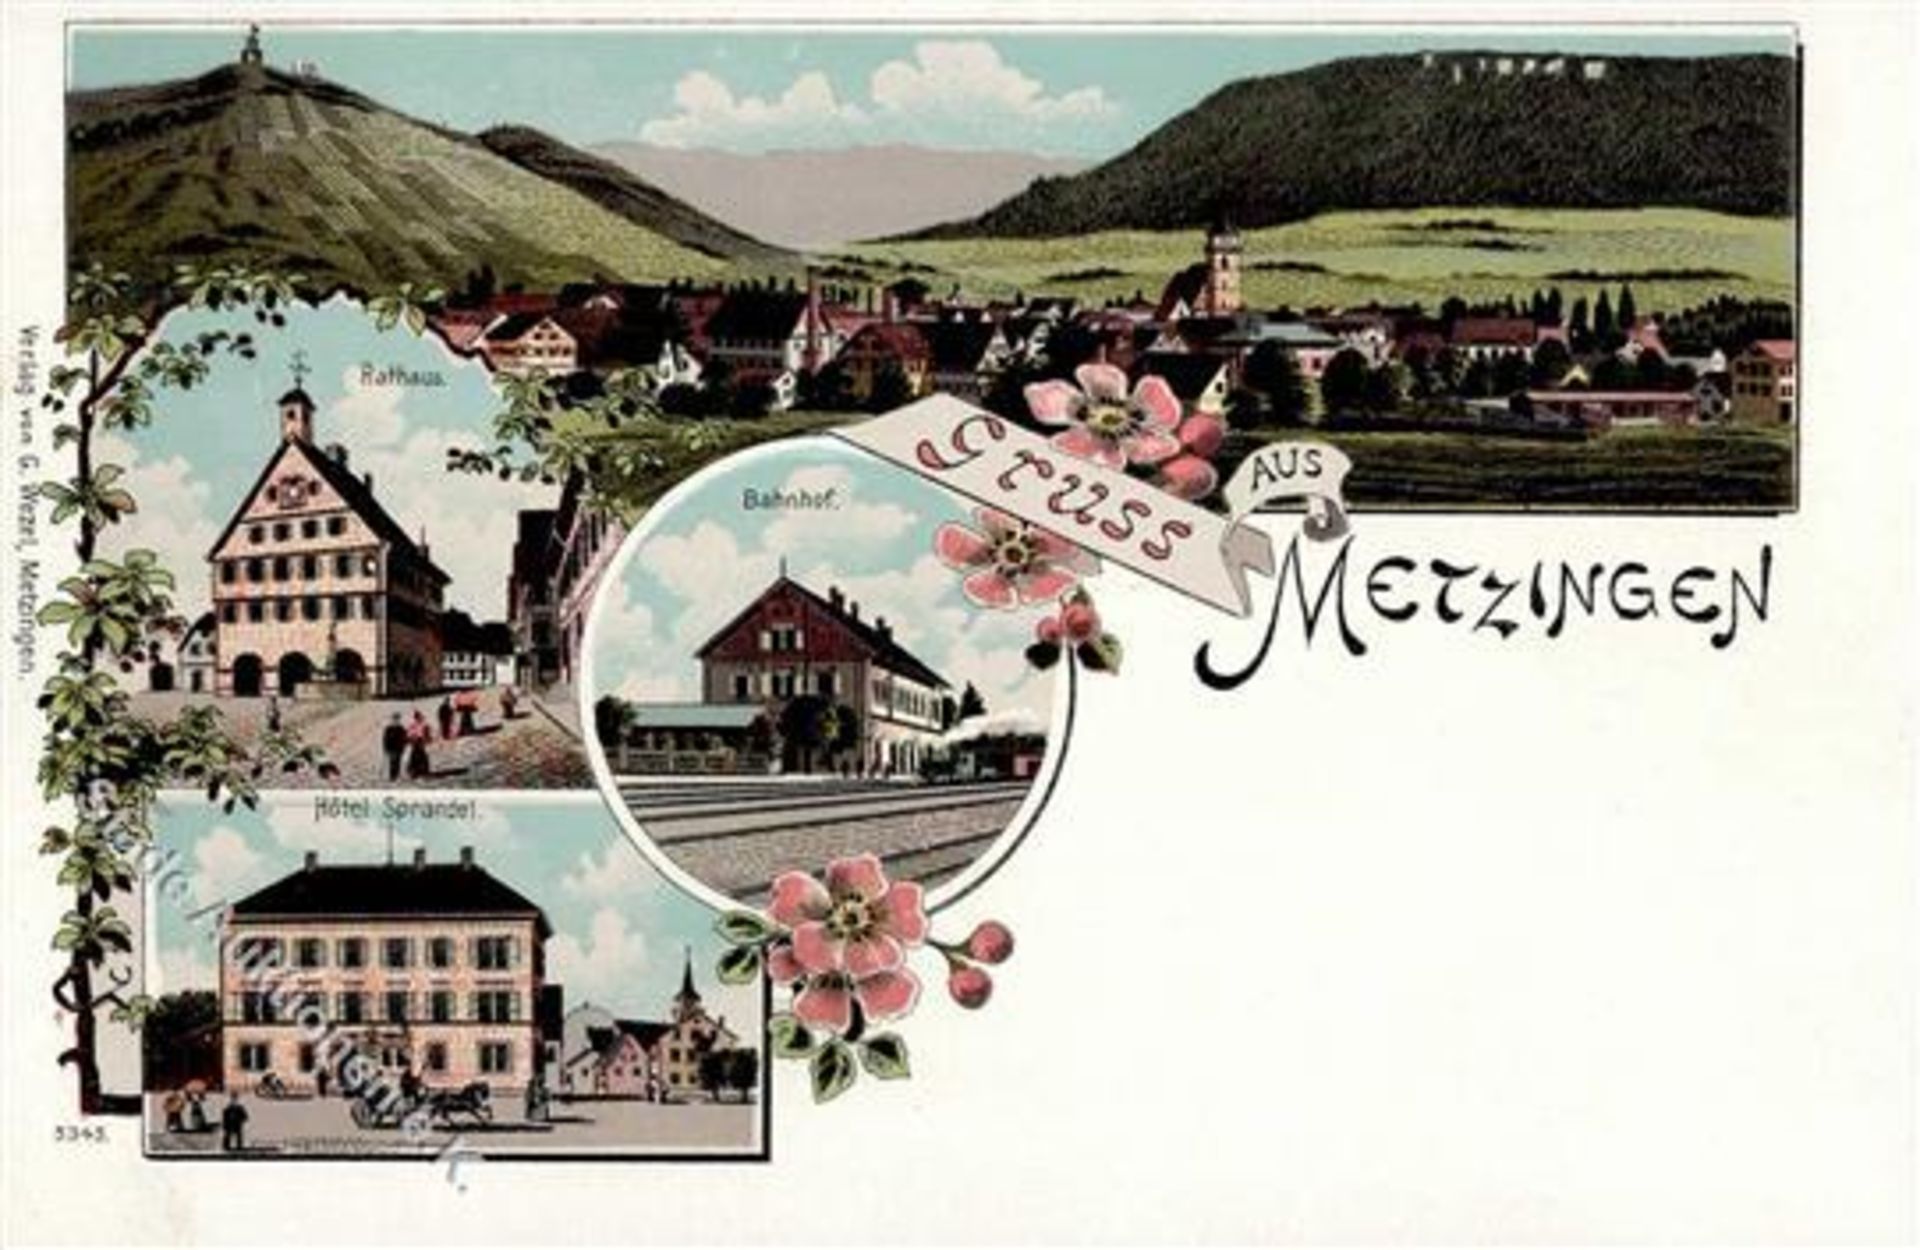 Metzingen (7430) Bahnhof Eisenbahn Rathaus Hotel Sprandel Lithographie IDieses Los wird in einer